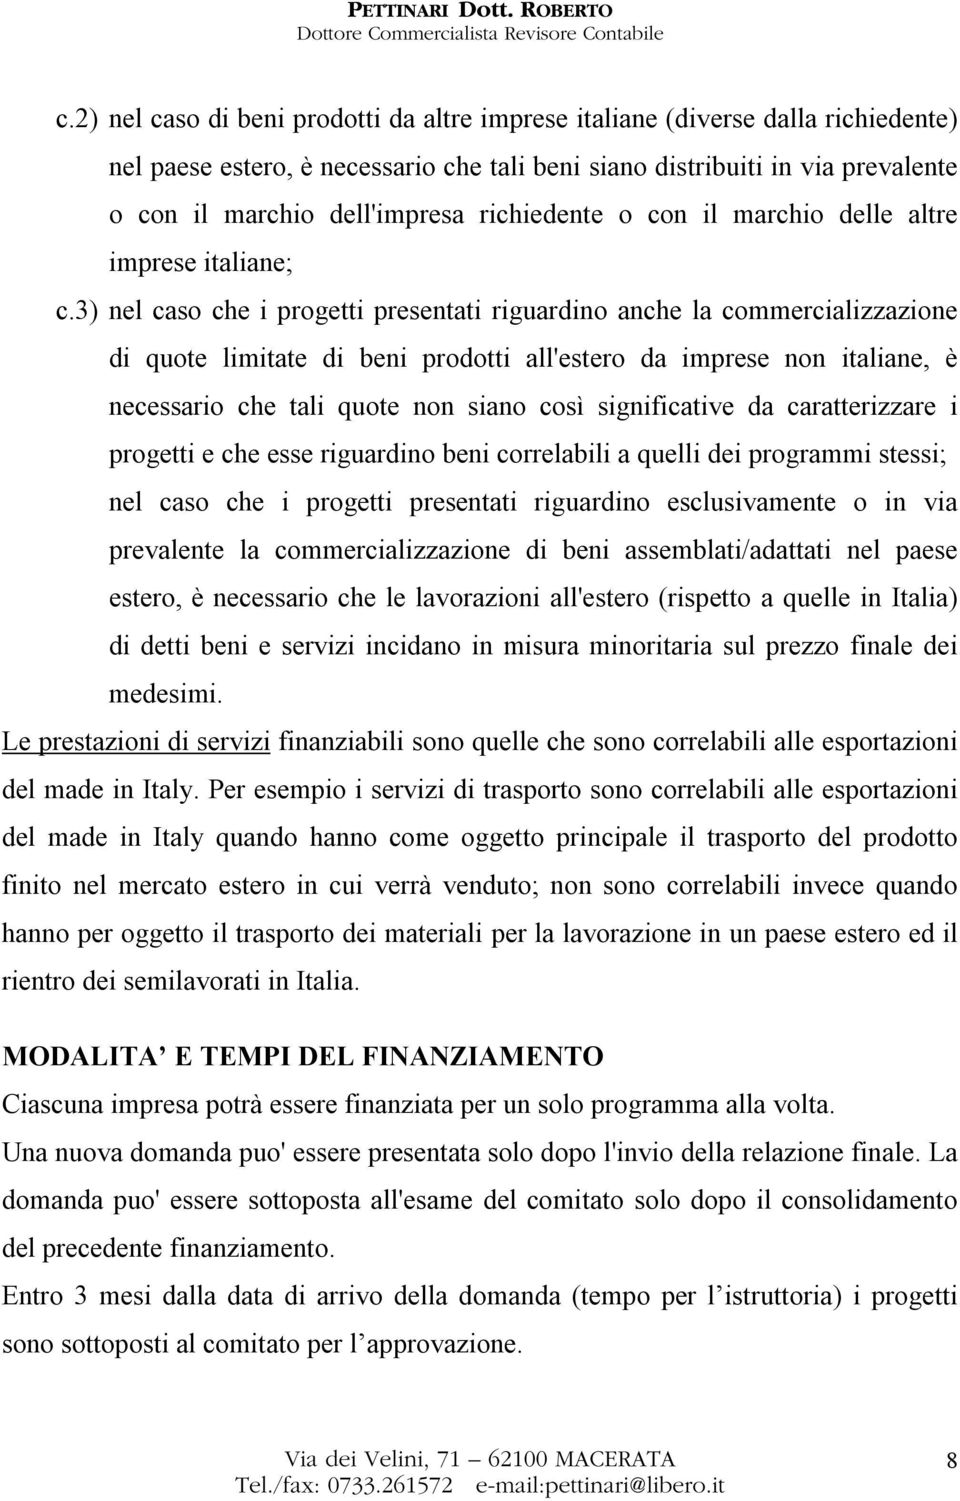 3) nel caso che i progetti presentati riguardino anche la commercializzazione di quote limitate di beni prodotti all'estero da imprese non italiane, è necessario che tali quote non siano così